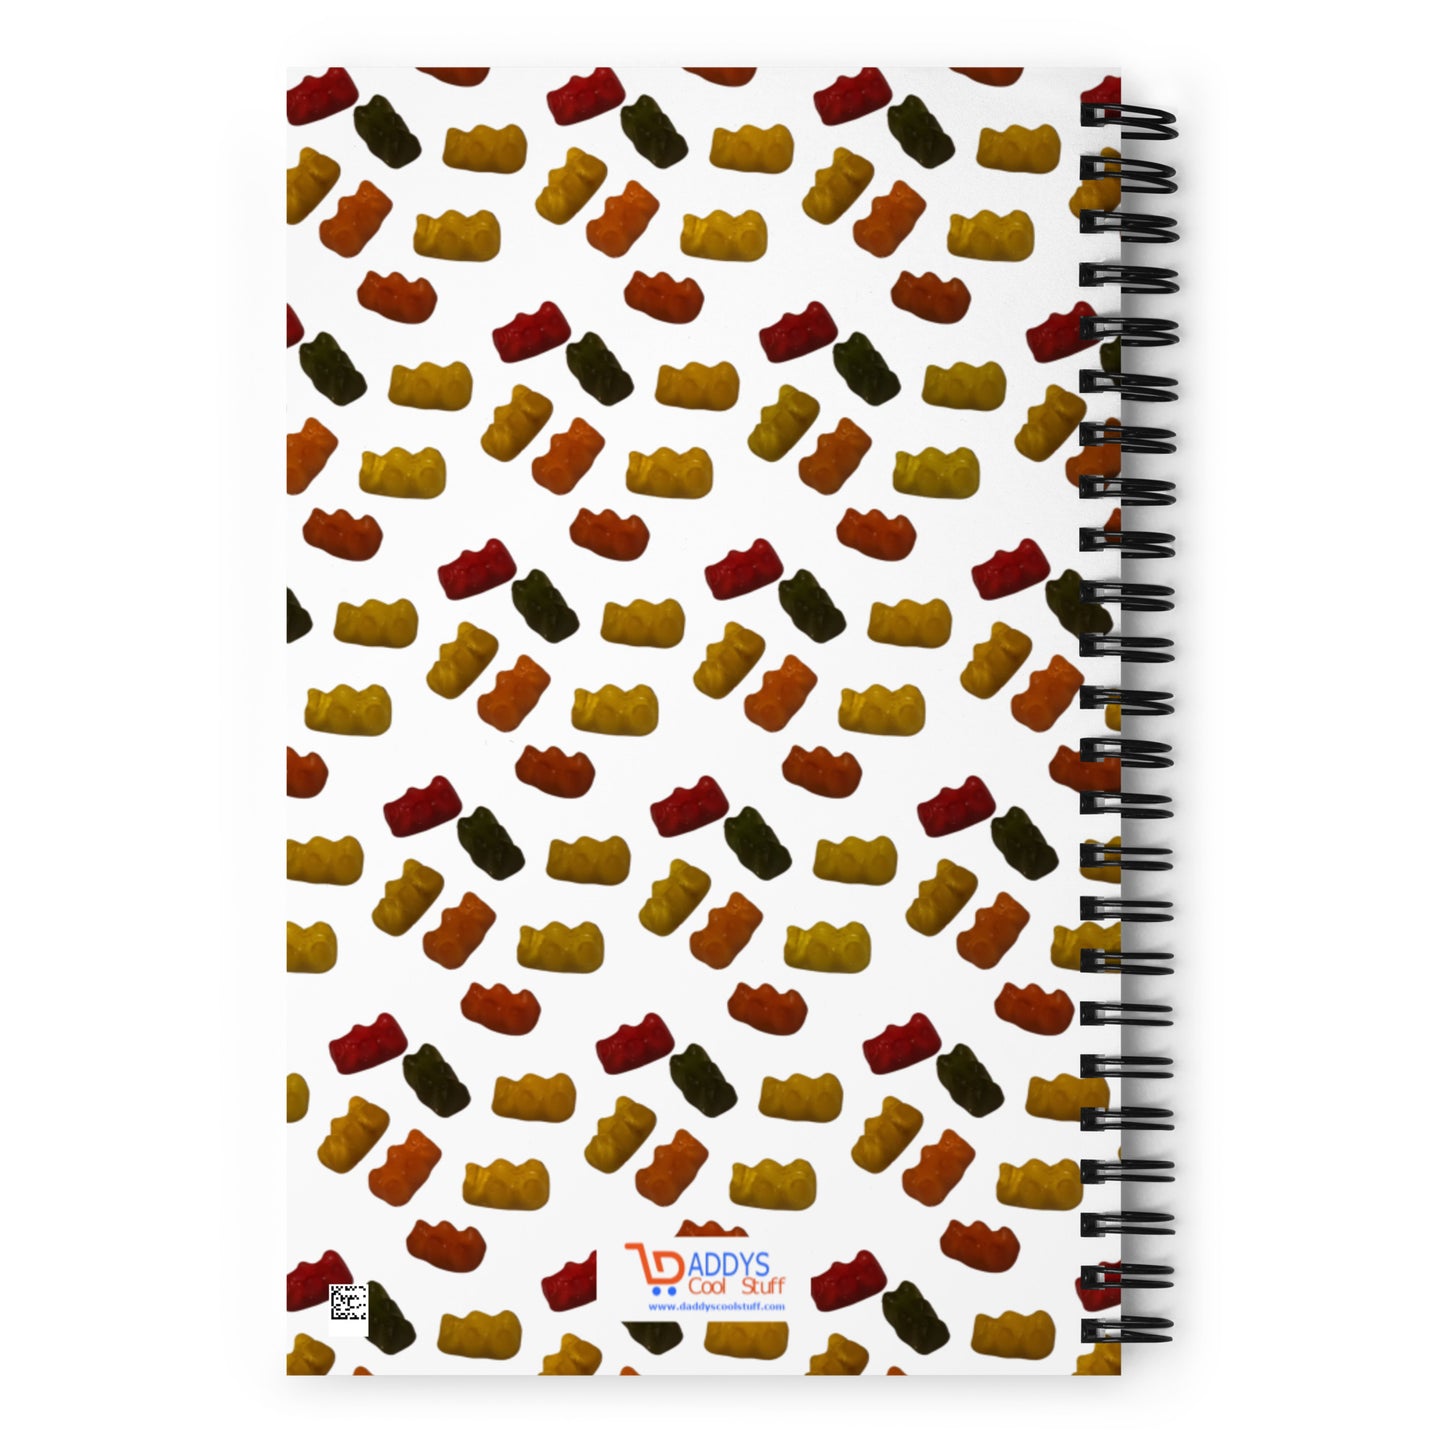 Gummy Bears -  Spiral notebook - white